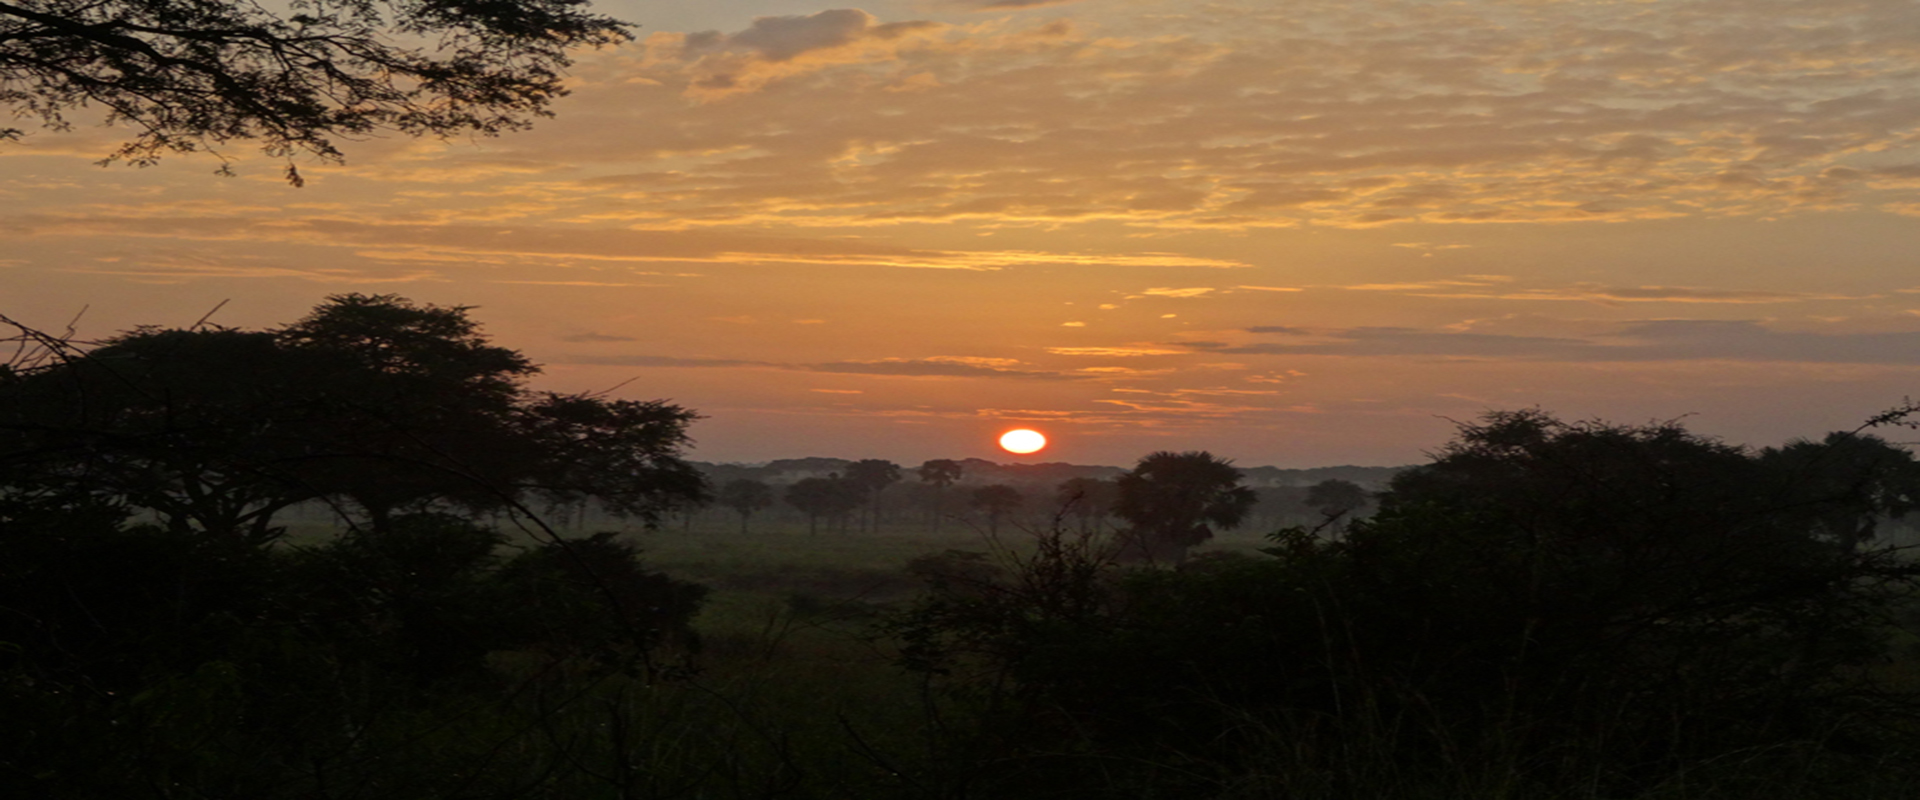 Uganda Adventure Safari (11 Days)